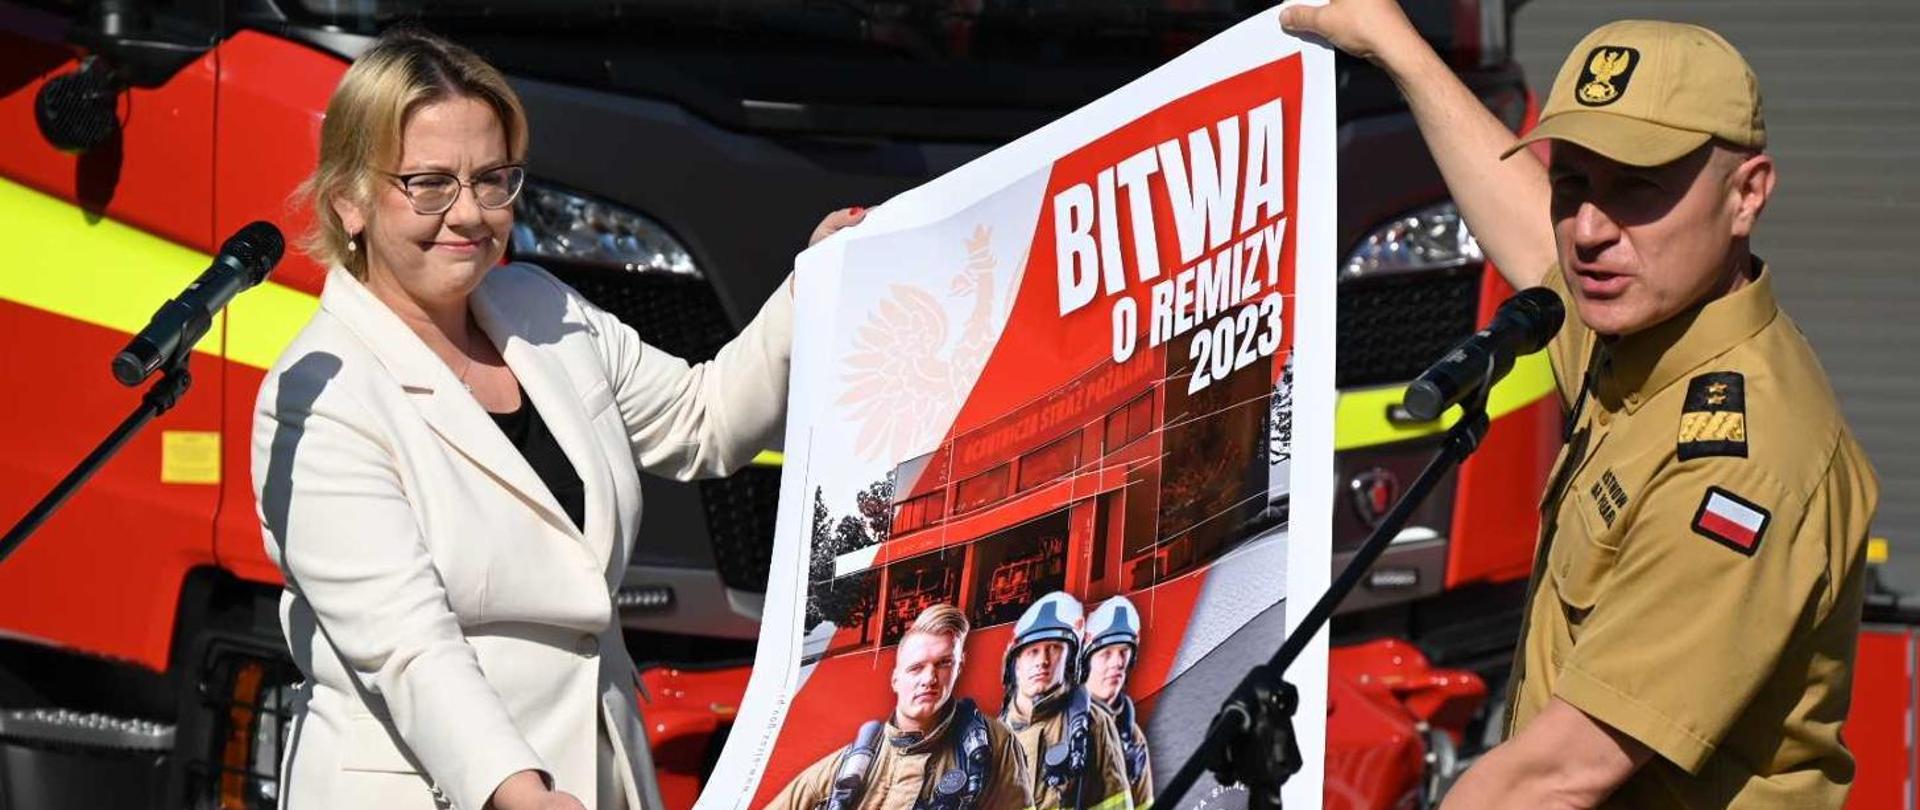 Zdjęcie przedstawią Panią Minister w białej marynarce trzymającą plakat wraz z Komendantem Głównym Straży Pożarnej. Na plakacie strażacy i napis Bitwa o remizę 2023.